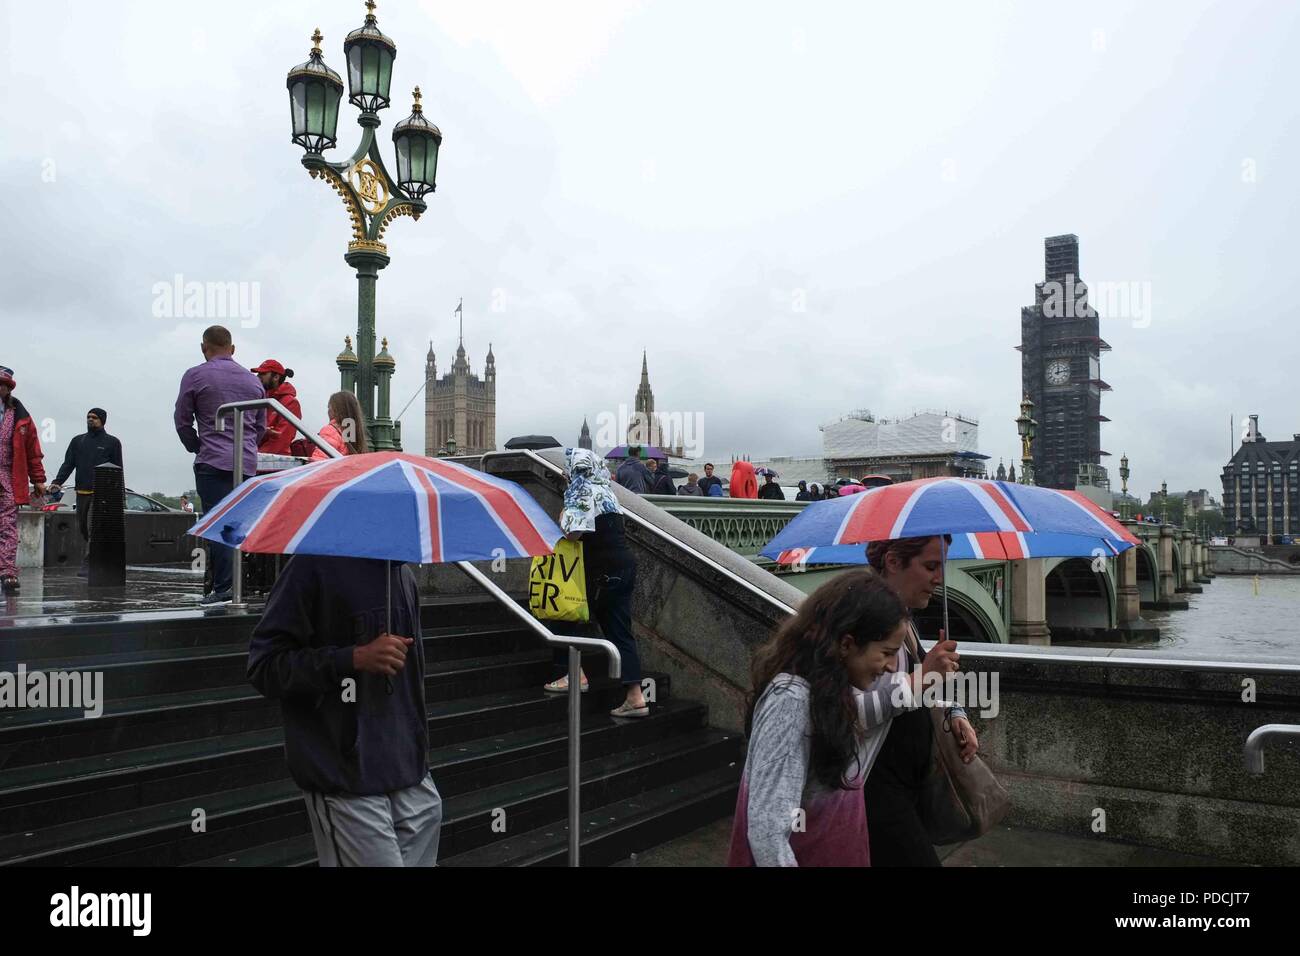 London, 9. August 2018: Touristen auf die Westminster Bridge Schutz vor dem Regen unter Regenschirmen. Credit: Claire Doherty/Alamy leben Nachrichten Stockfoto